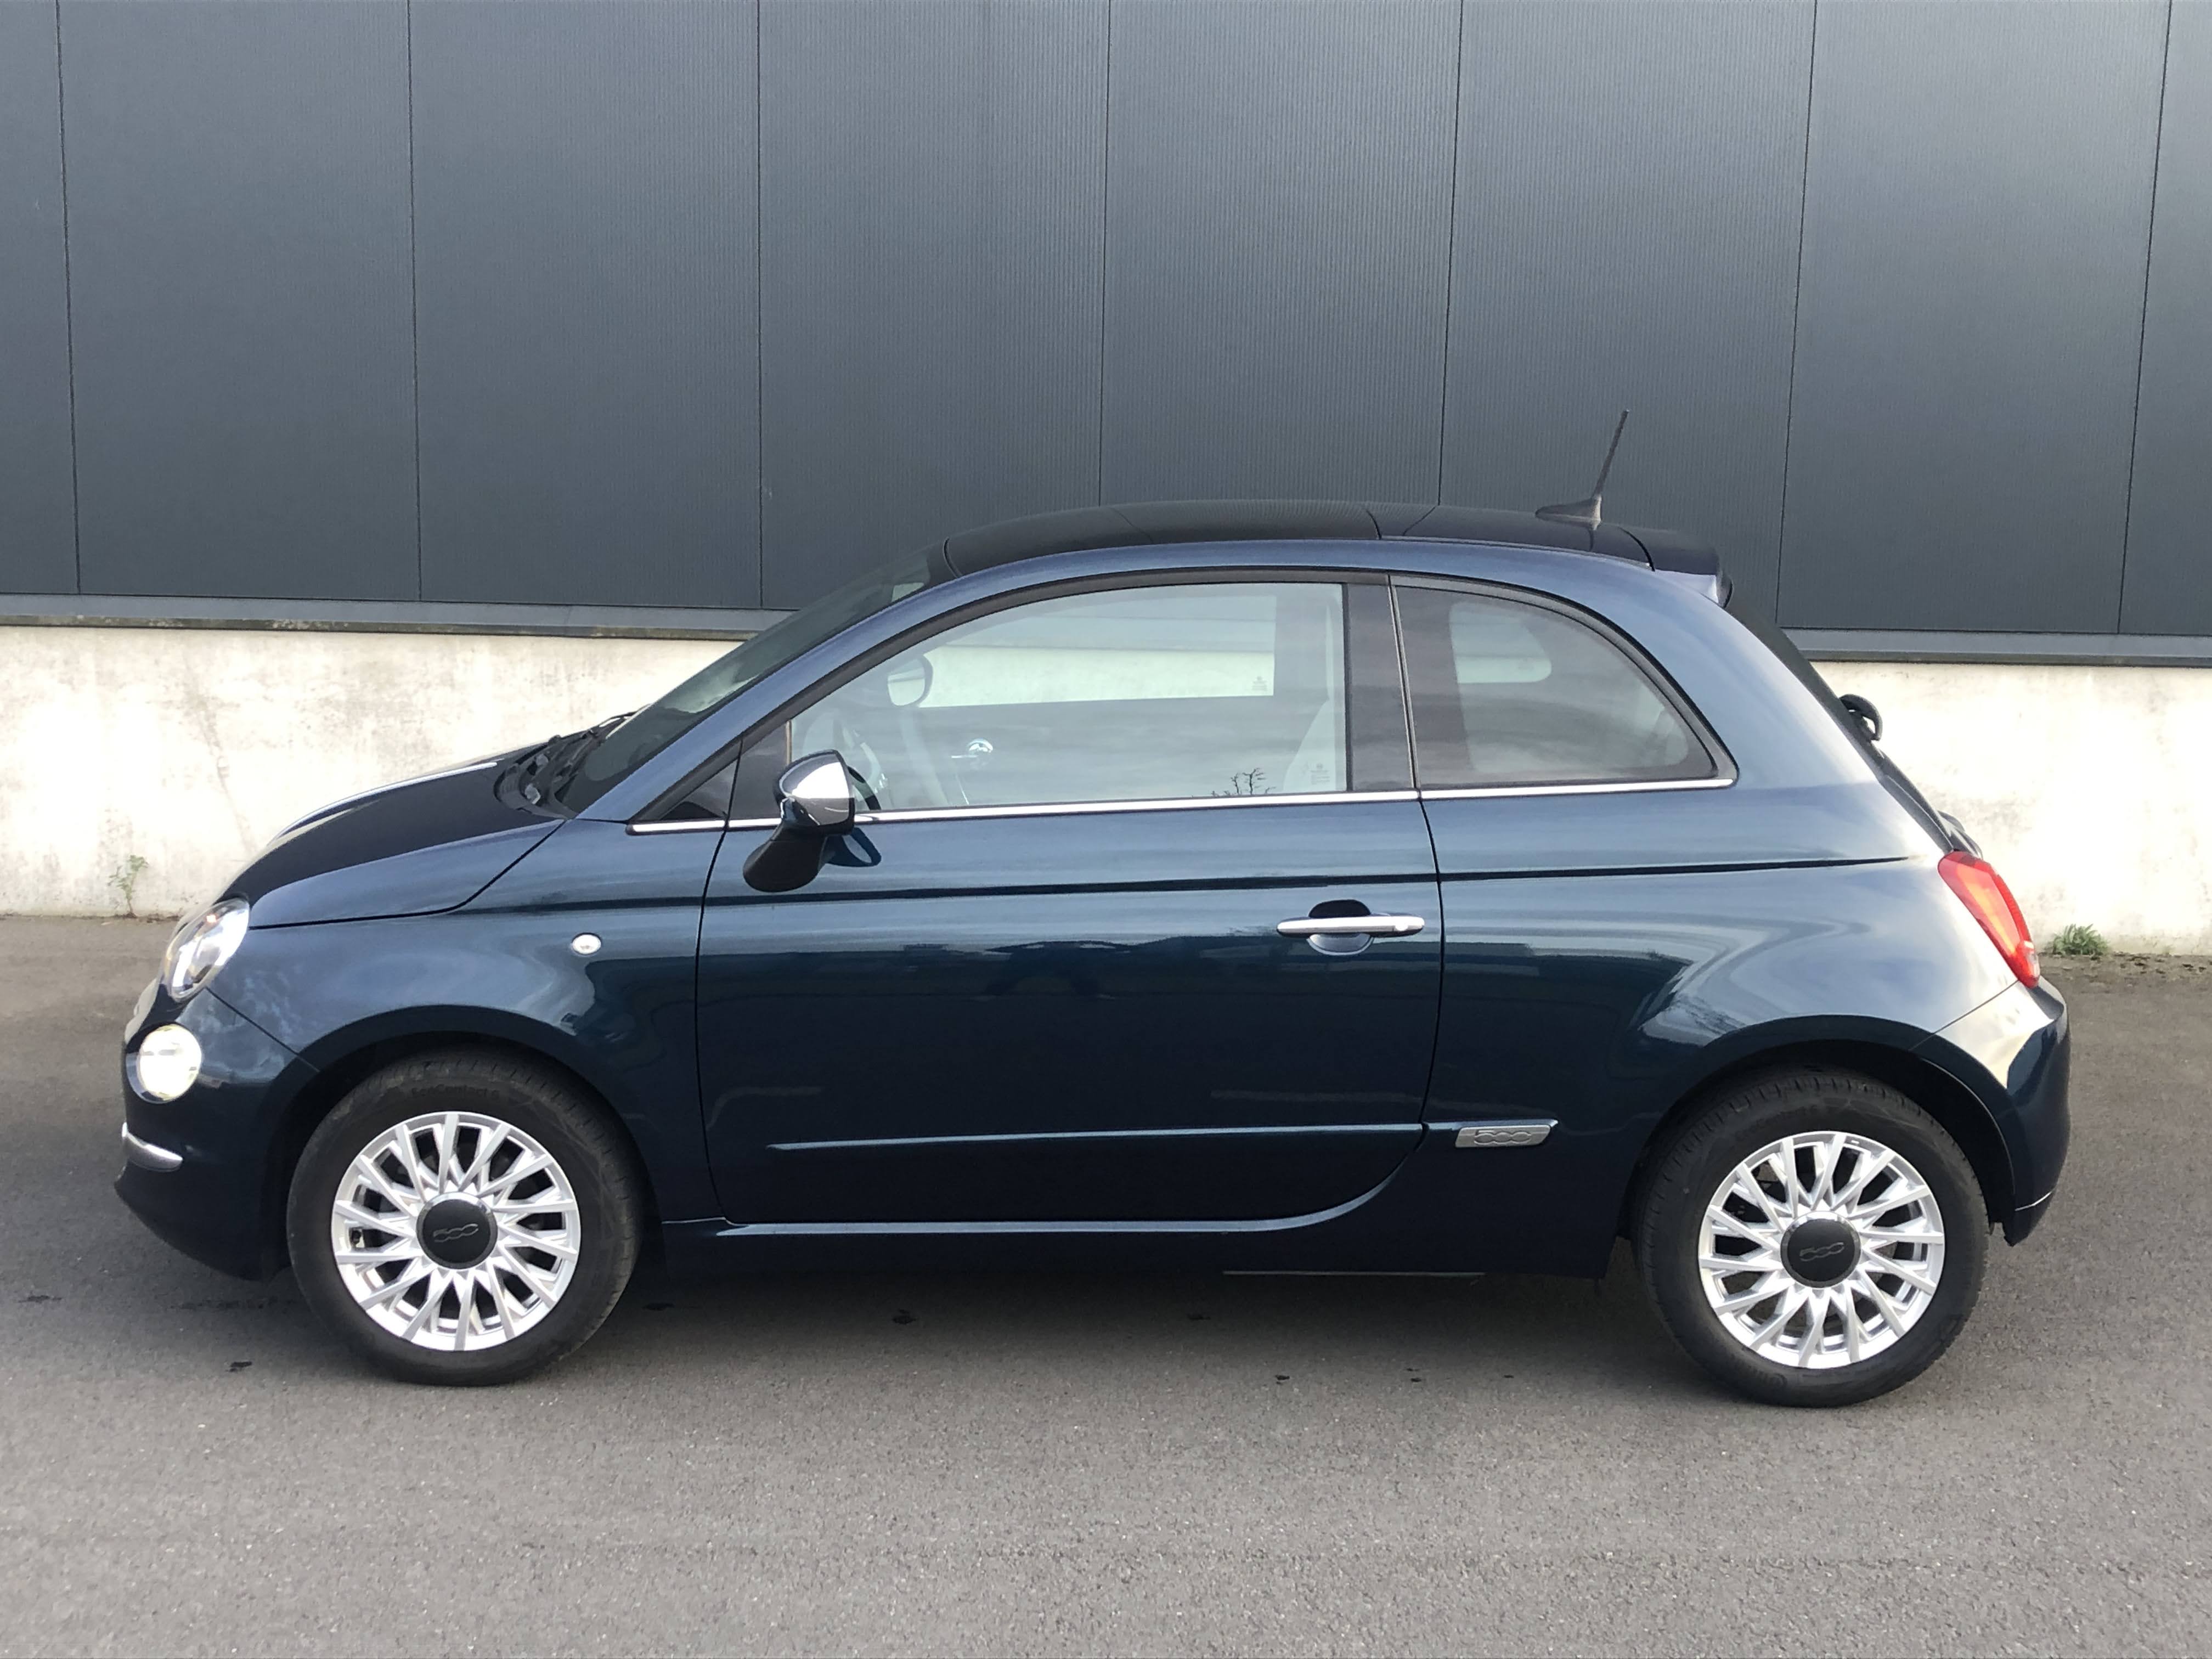 Fiat 500 Star 1.2 - 06-2020 - 33000km - Pic 3